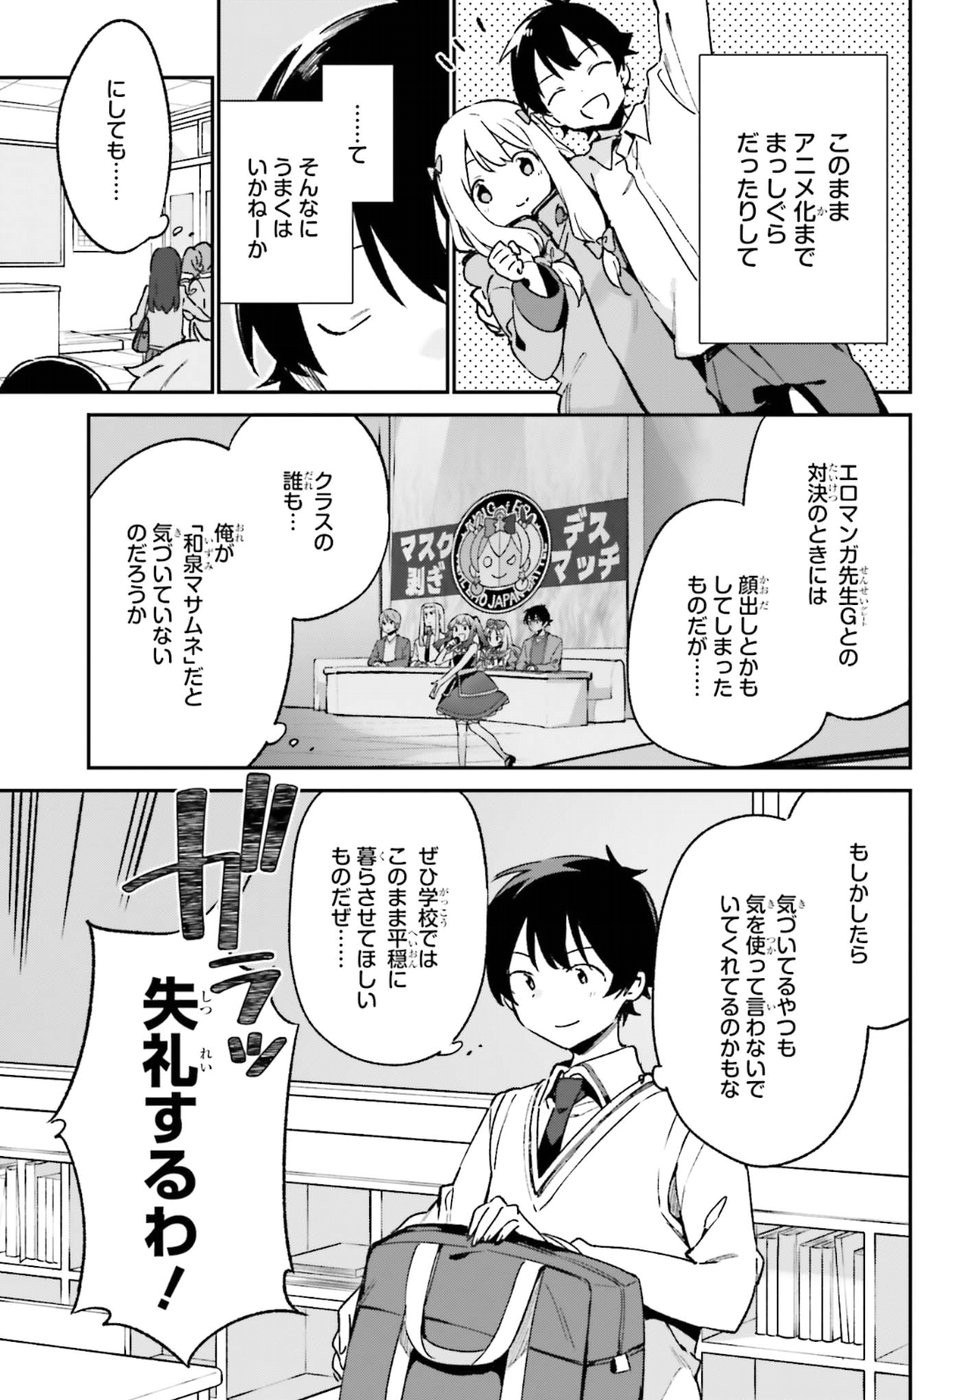 Ero Manga Sensei - Chapter 51 - Page 3